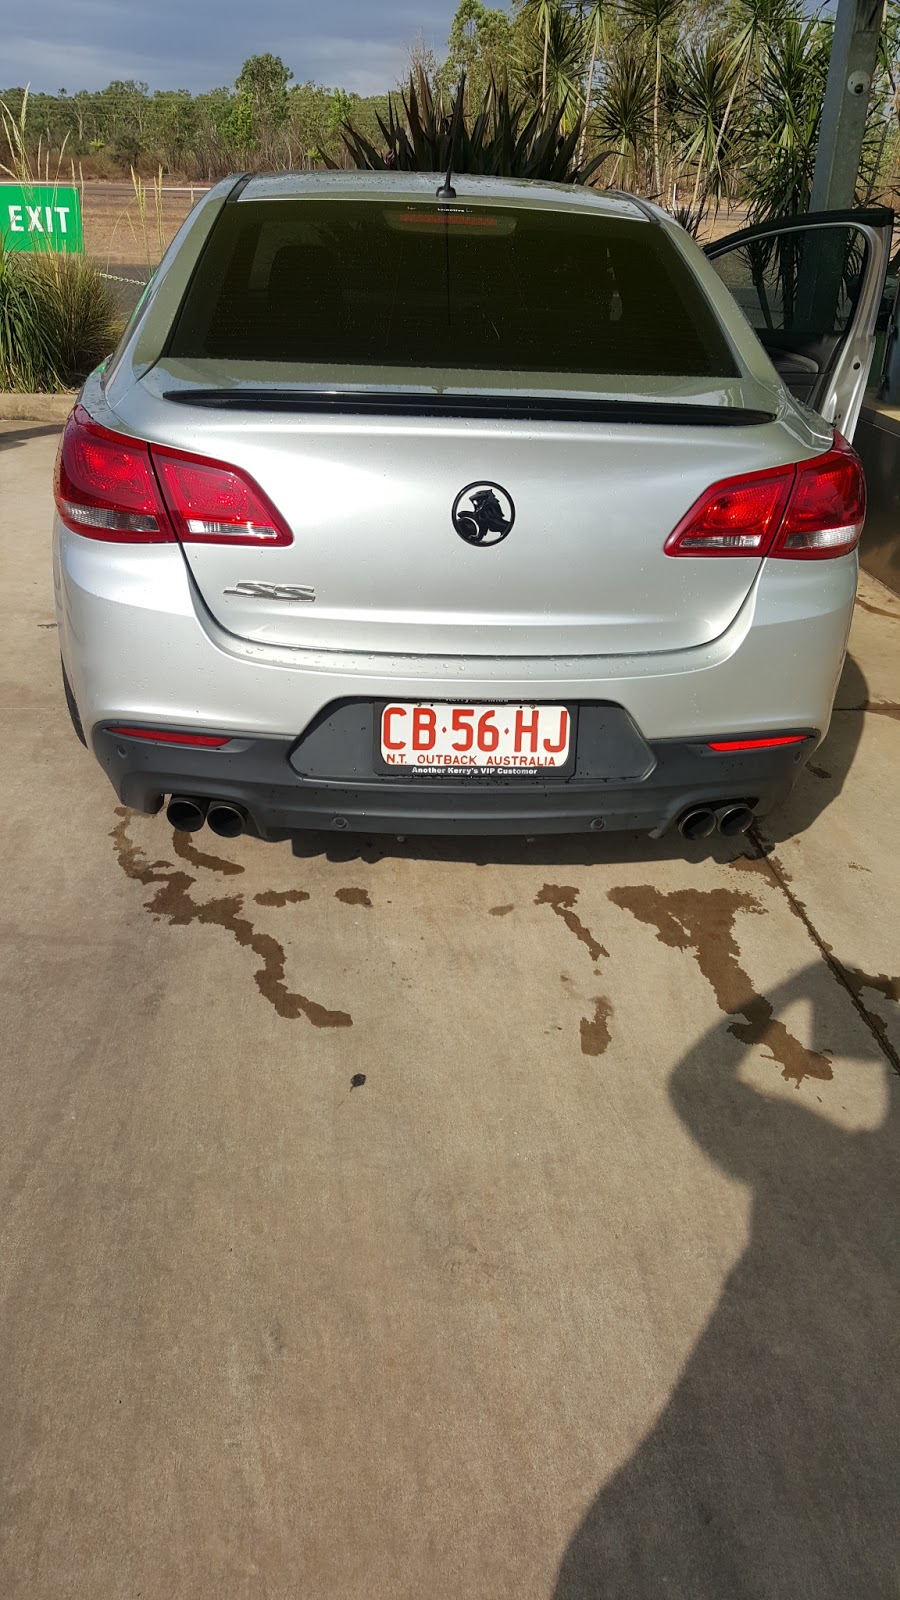 Wash N Go Car Wash | car wash | 19 Fowlestone Rd, Tivendale NT 0822, Australia | 0499995558 OR +61 499 995 558